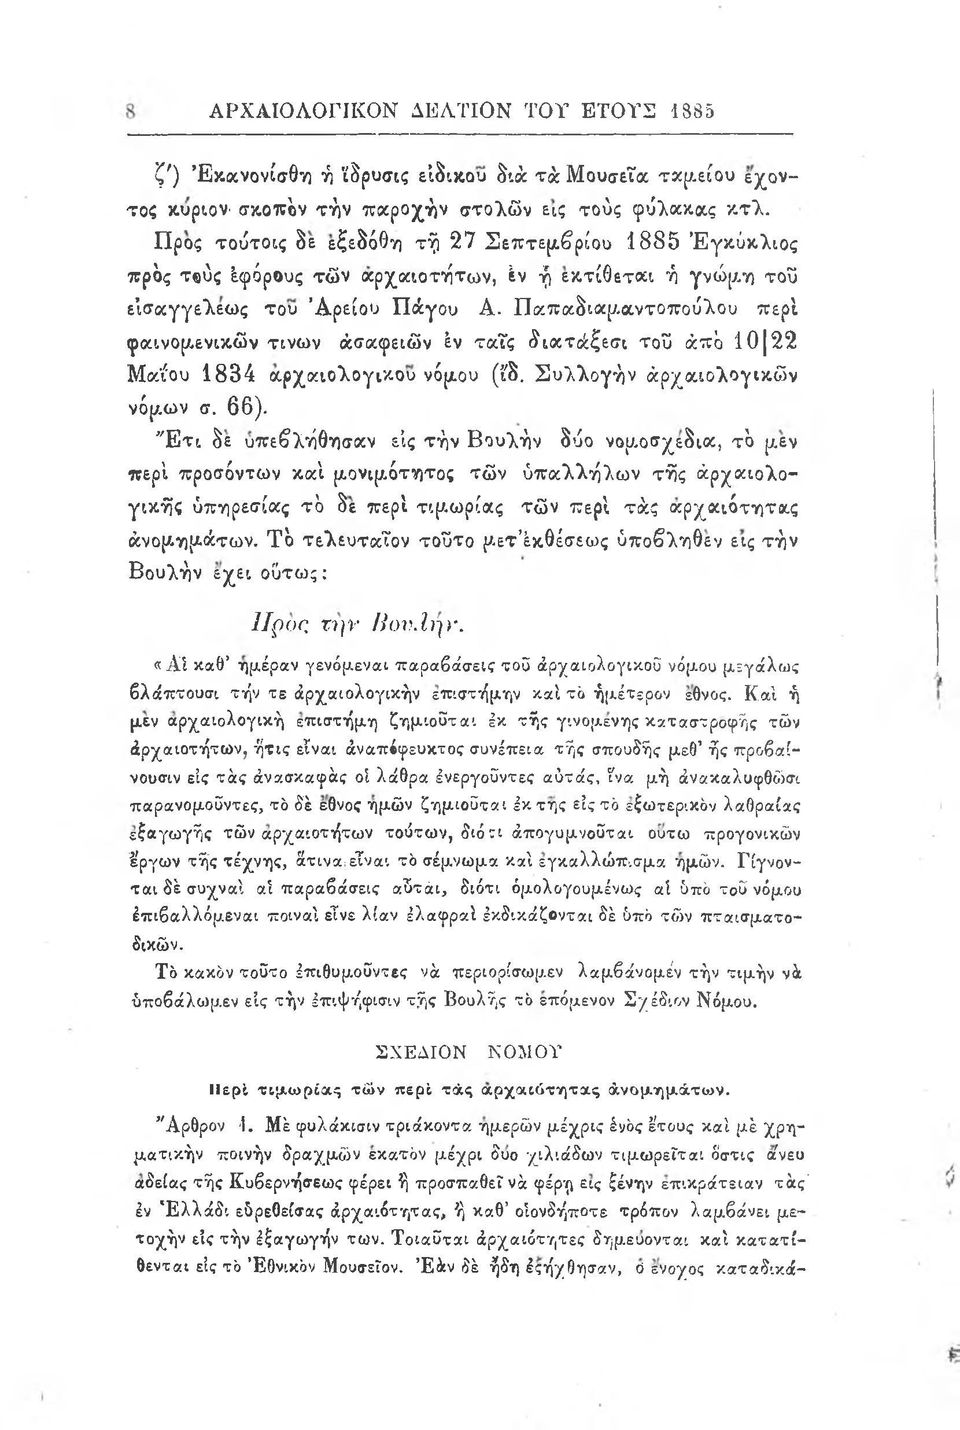 Παπαδιαμαντοπούλου περί φαινομενικών τινων ασαφειών εν ταις δια τάξεσι του α π ό 10 22 Μαΐου 1834 αρχαιολογικού νόμου (ιδ. Συλλογήν αρχαιολογικών νόμων σ. 66).